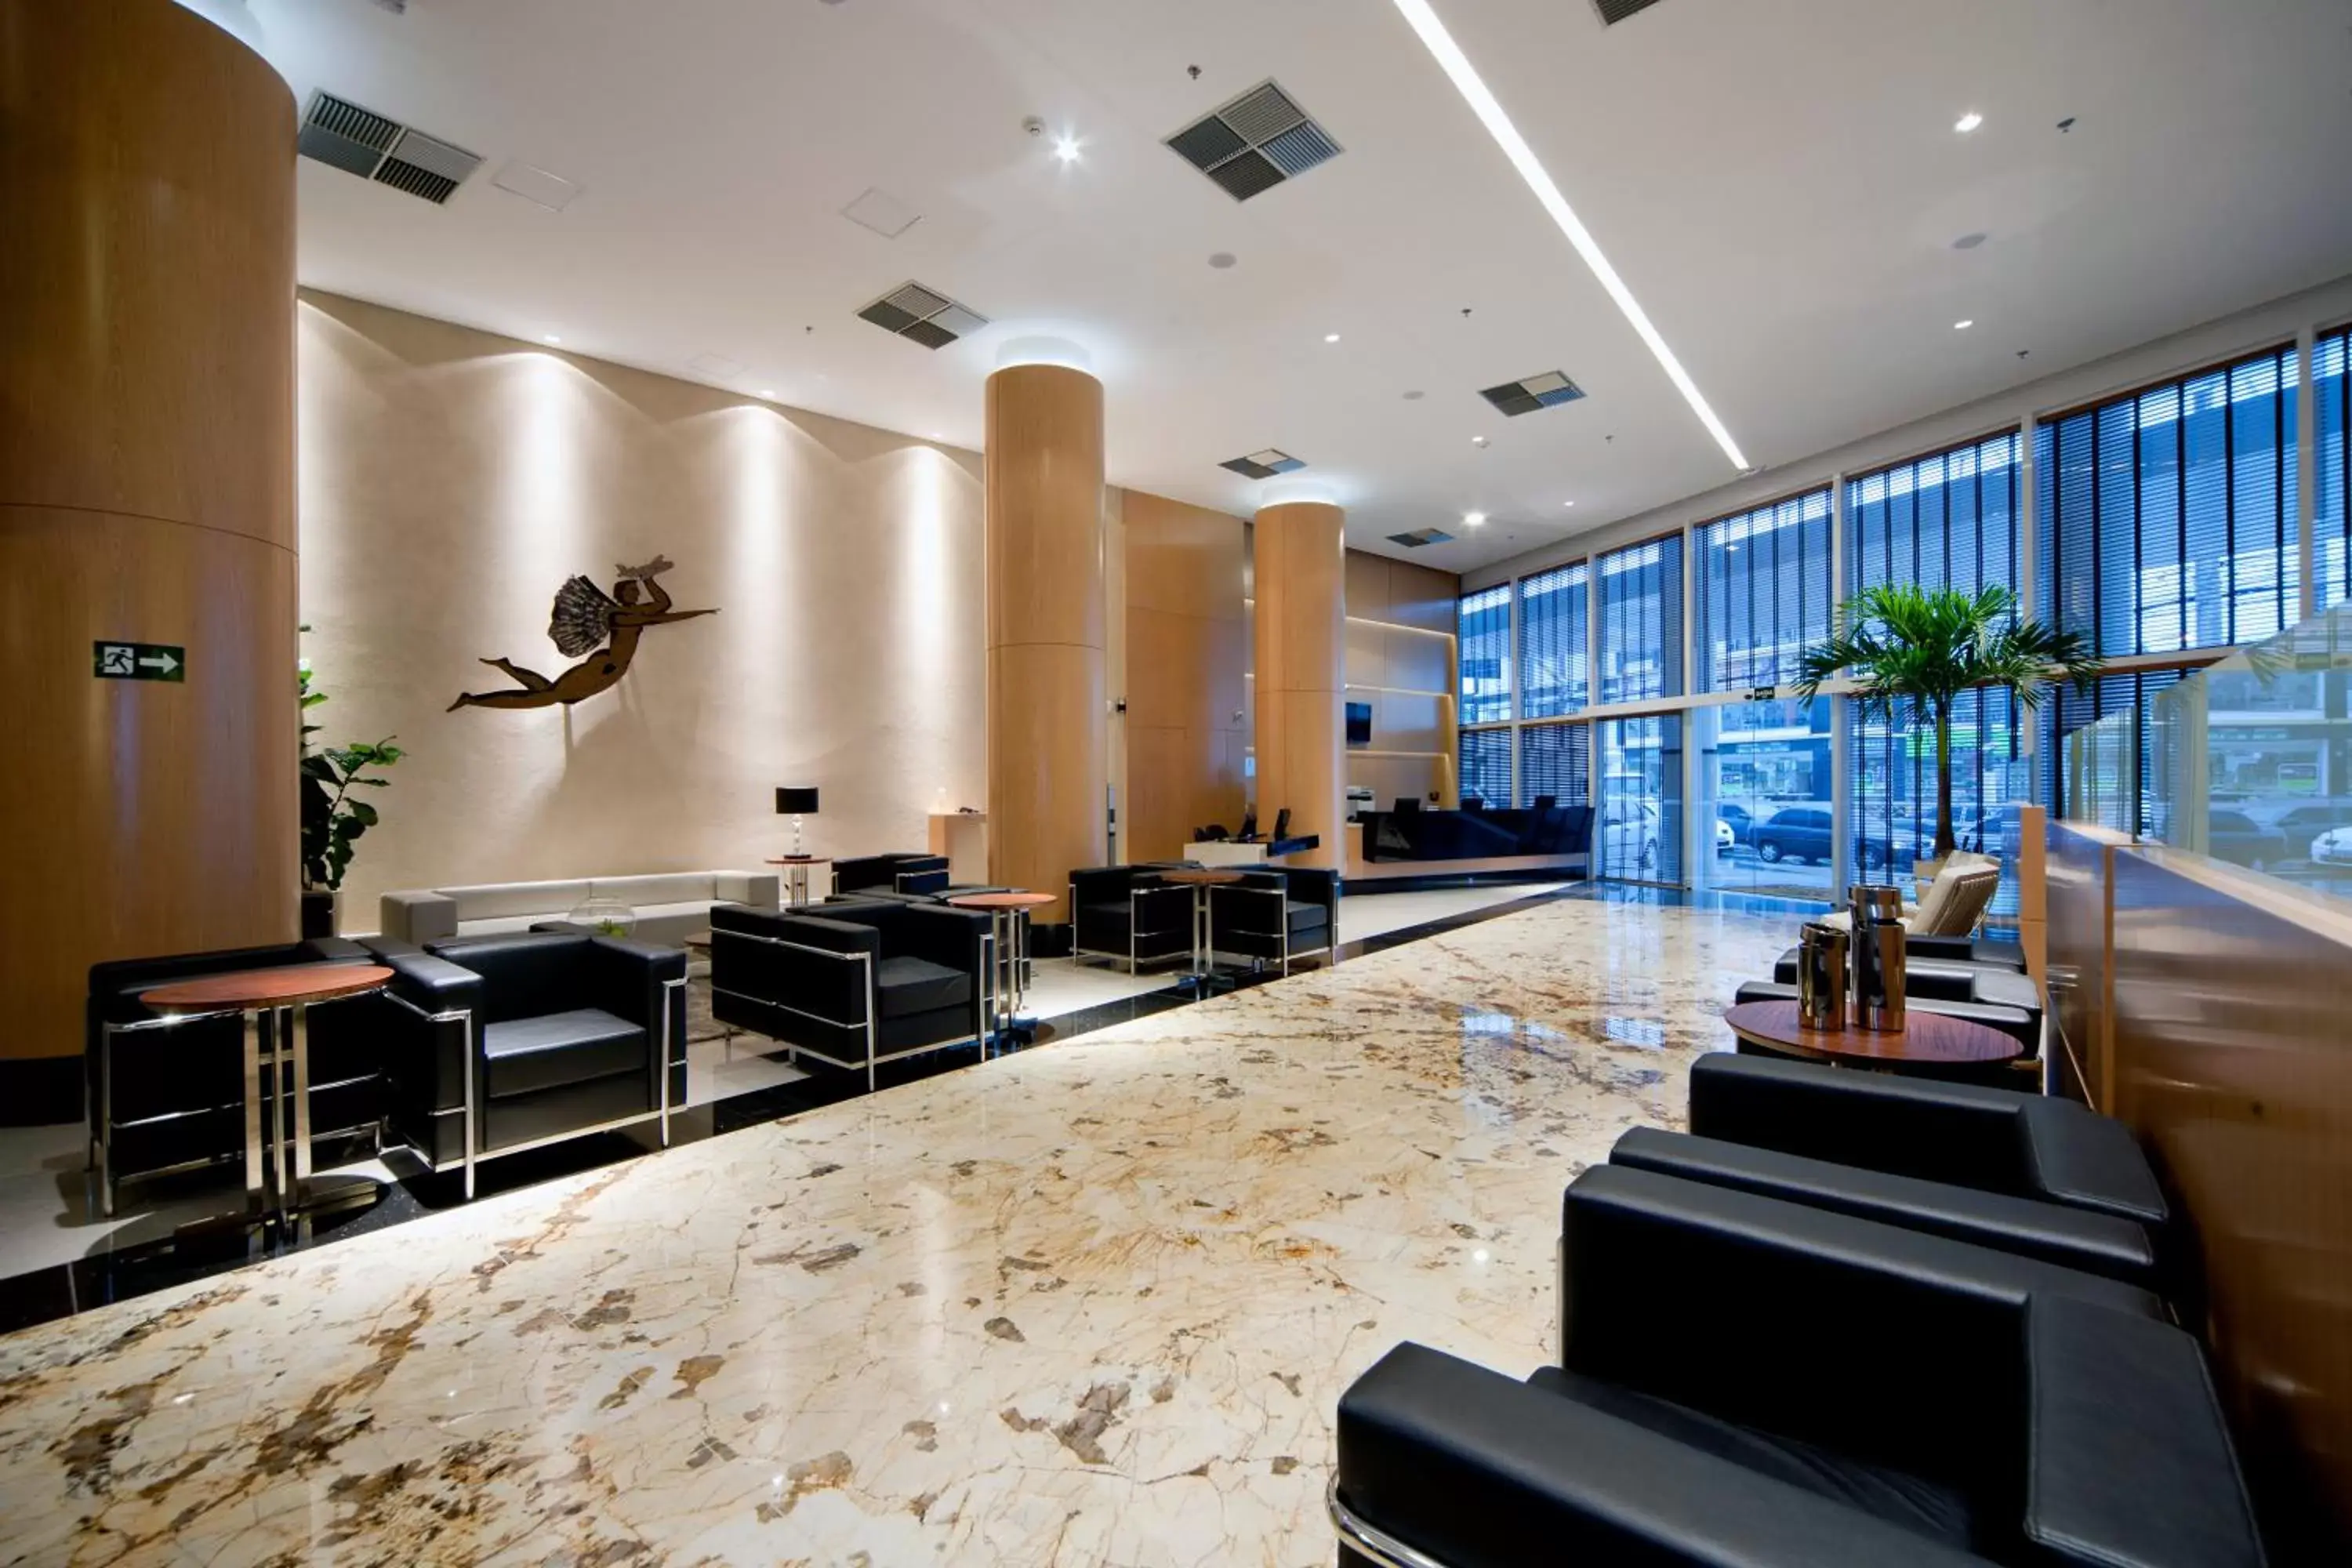 Lobby or reception in Quality Hotel Vitória